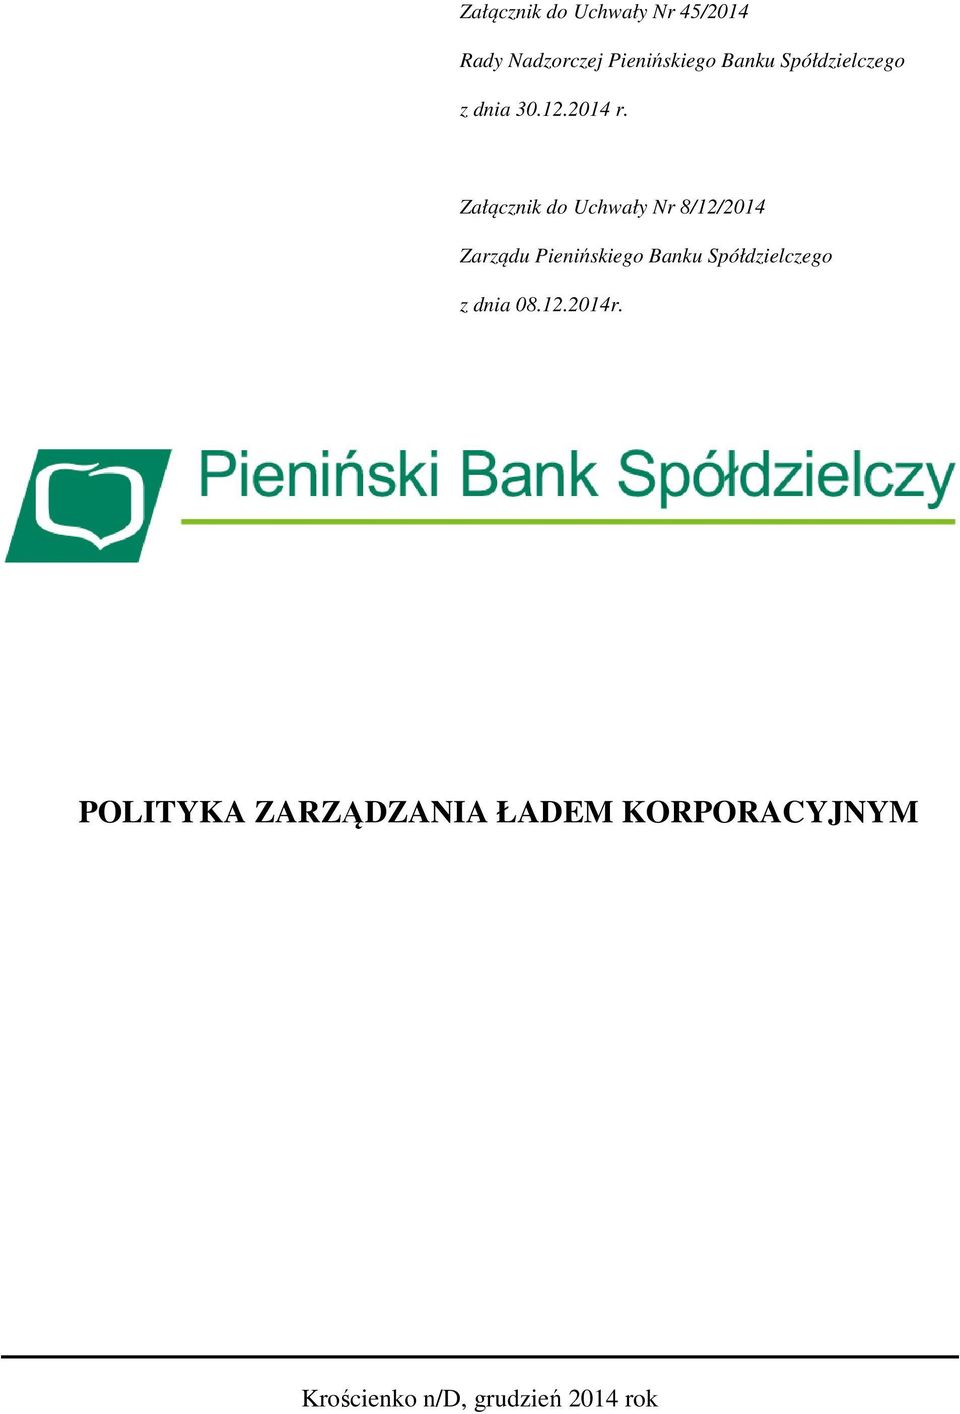 Załącznik do Uchwały Nr 8/12/2014 Zarządu Pienińskiego Banku